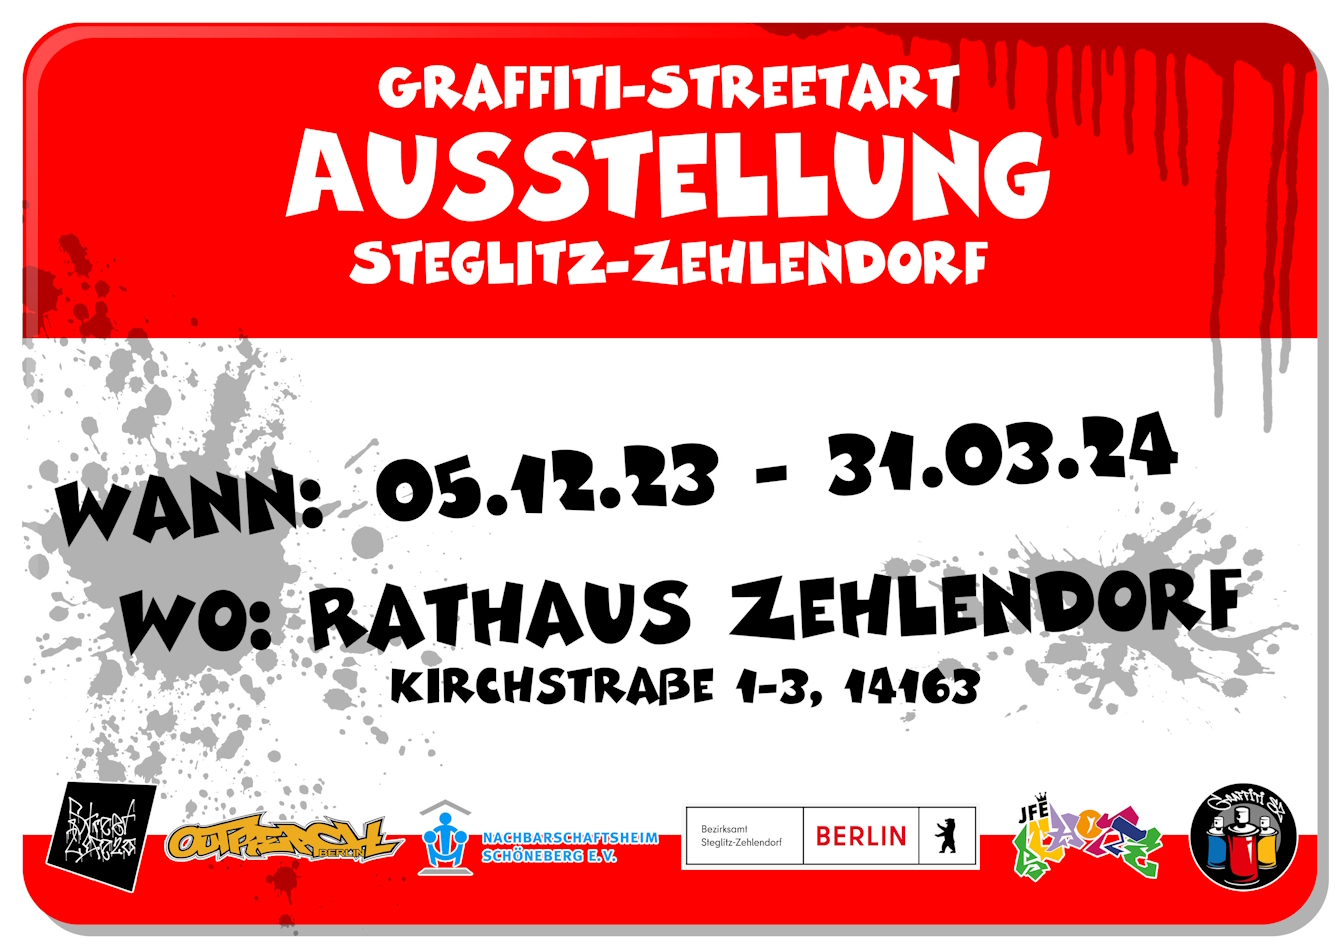 Graffik in Streetart-Style mit Hinweis auf Graffiti-Ausstellung